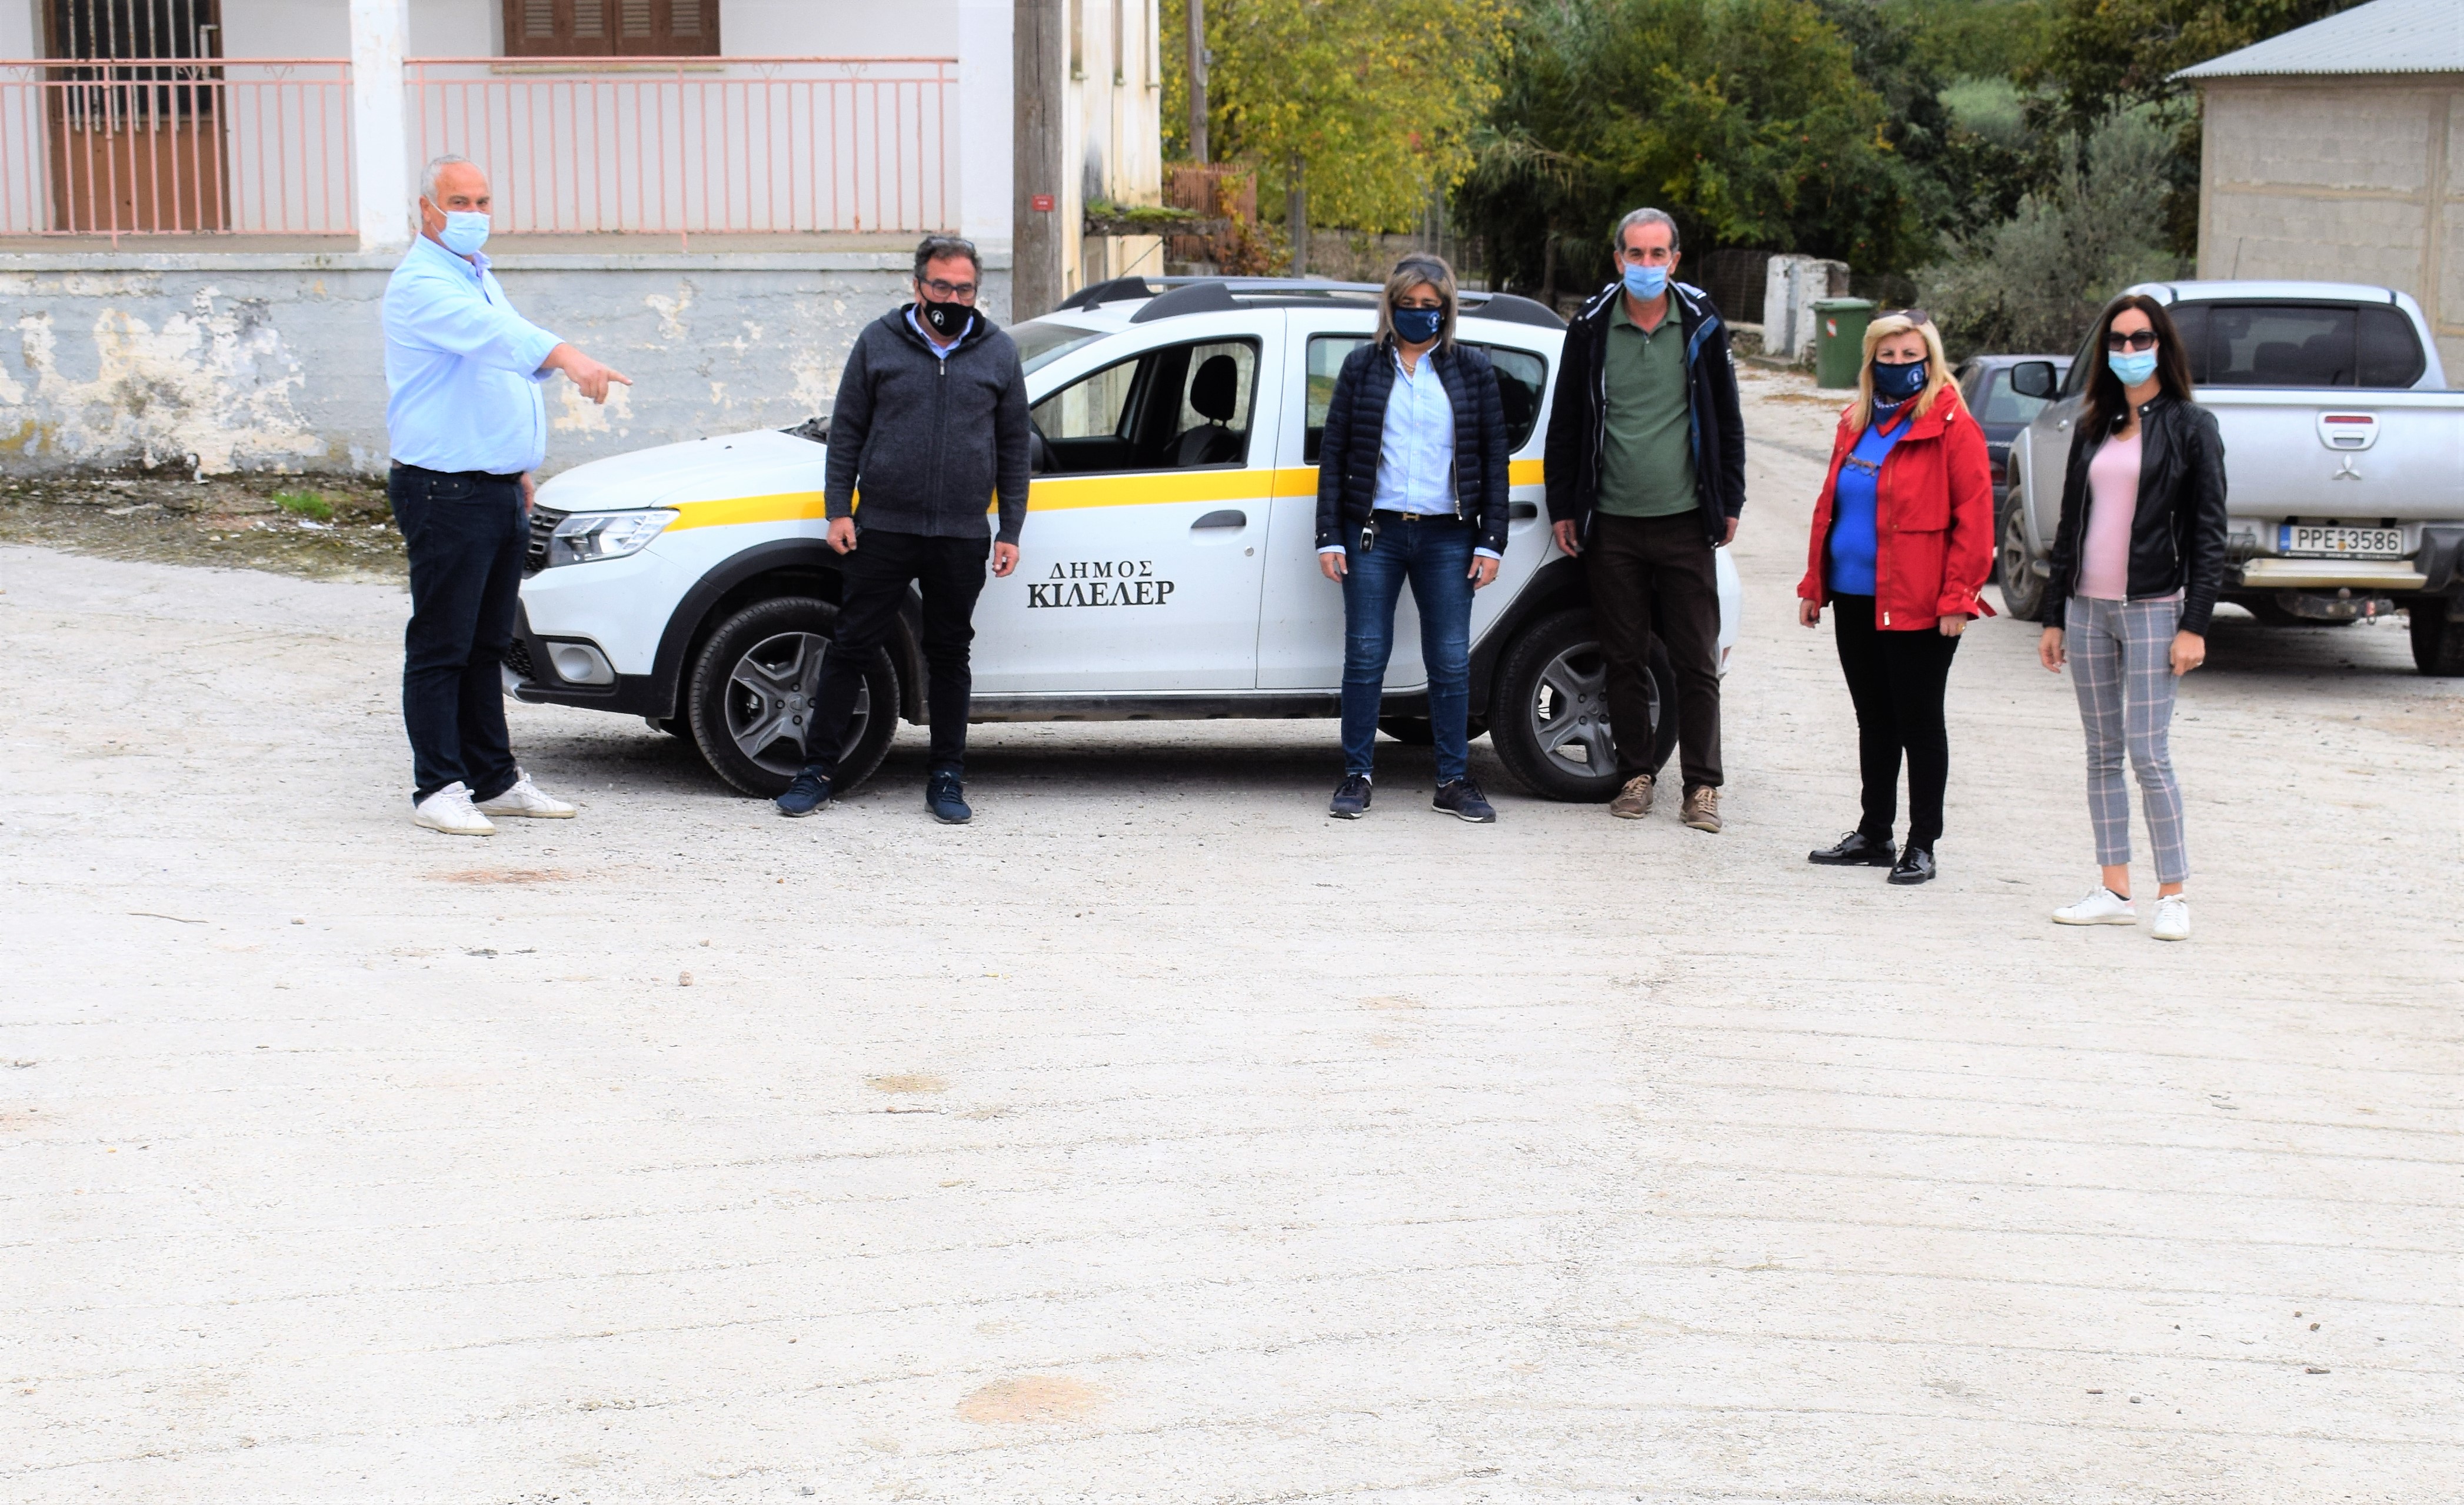 Δήμος Κιλελέρ: Ολοκληρώθηκαν τα έργα αποκατάστασης δρόμων στο Καλό Νερό